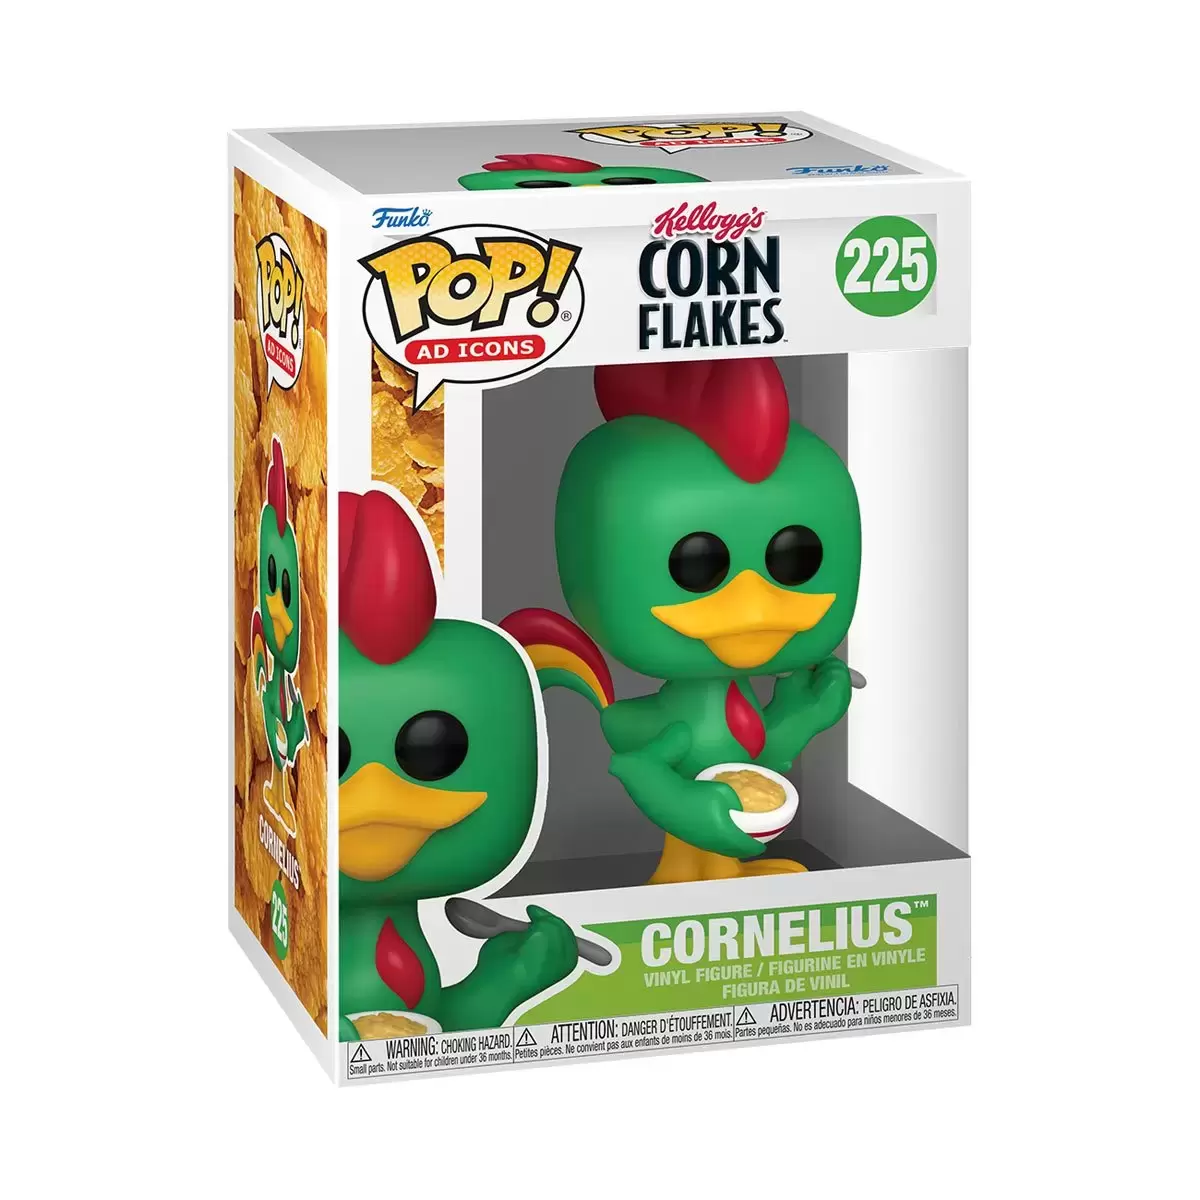 POP! Ad Icons - Corn Flakes - Cornelius